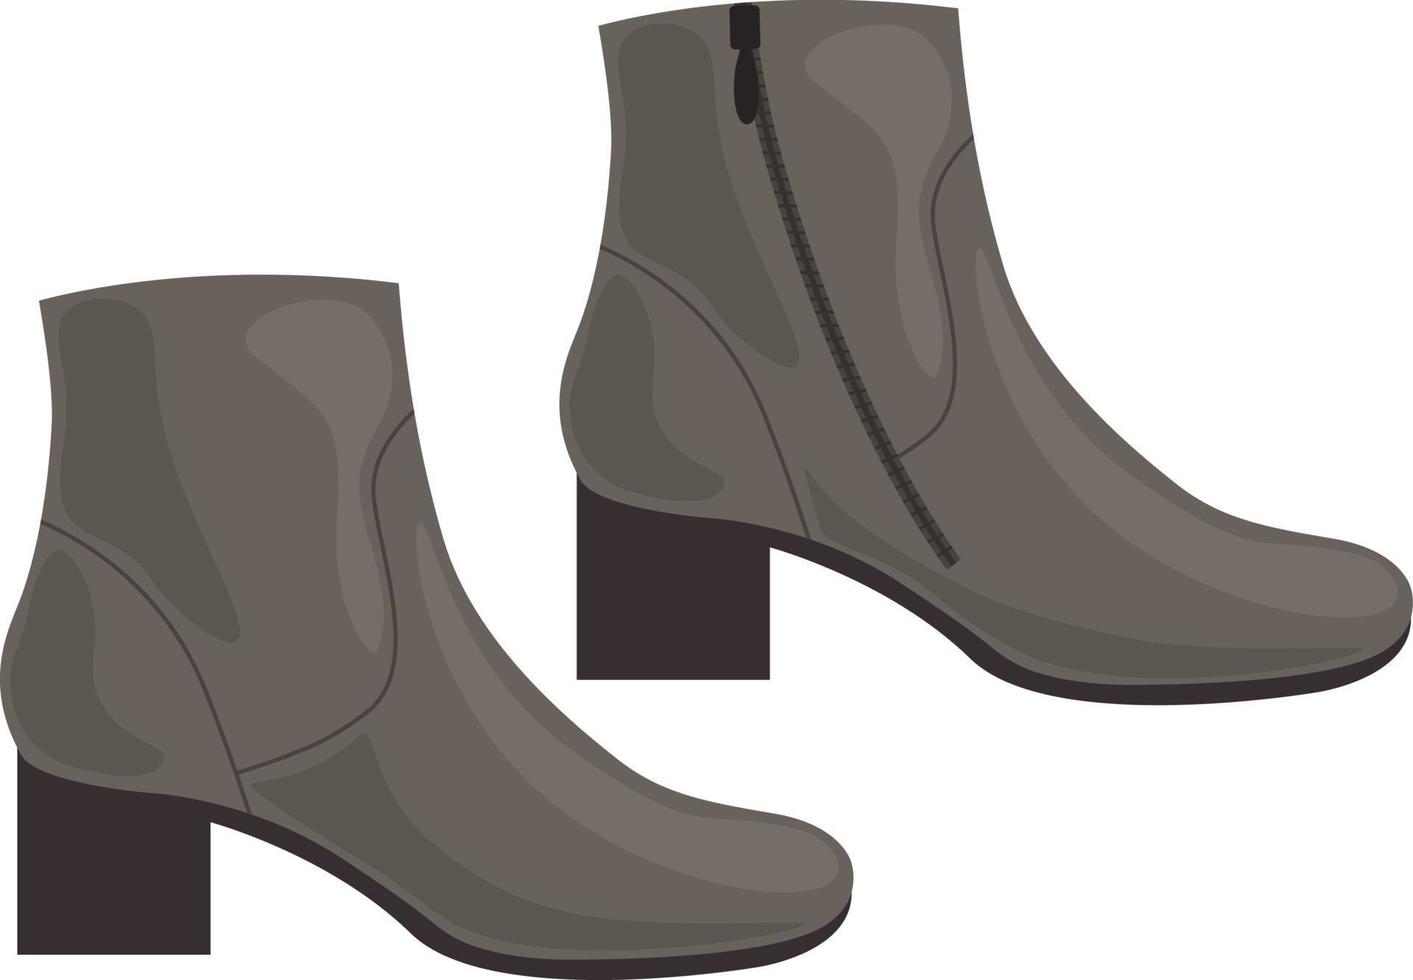 bottes. élégantes chaussures marron à talons. chaussures d'automne pour marcher par temps froid et humide. bottes d'hiver. illustration vectorielle isolée sur fond blanc vecteur